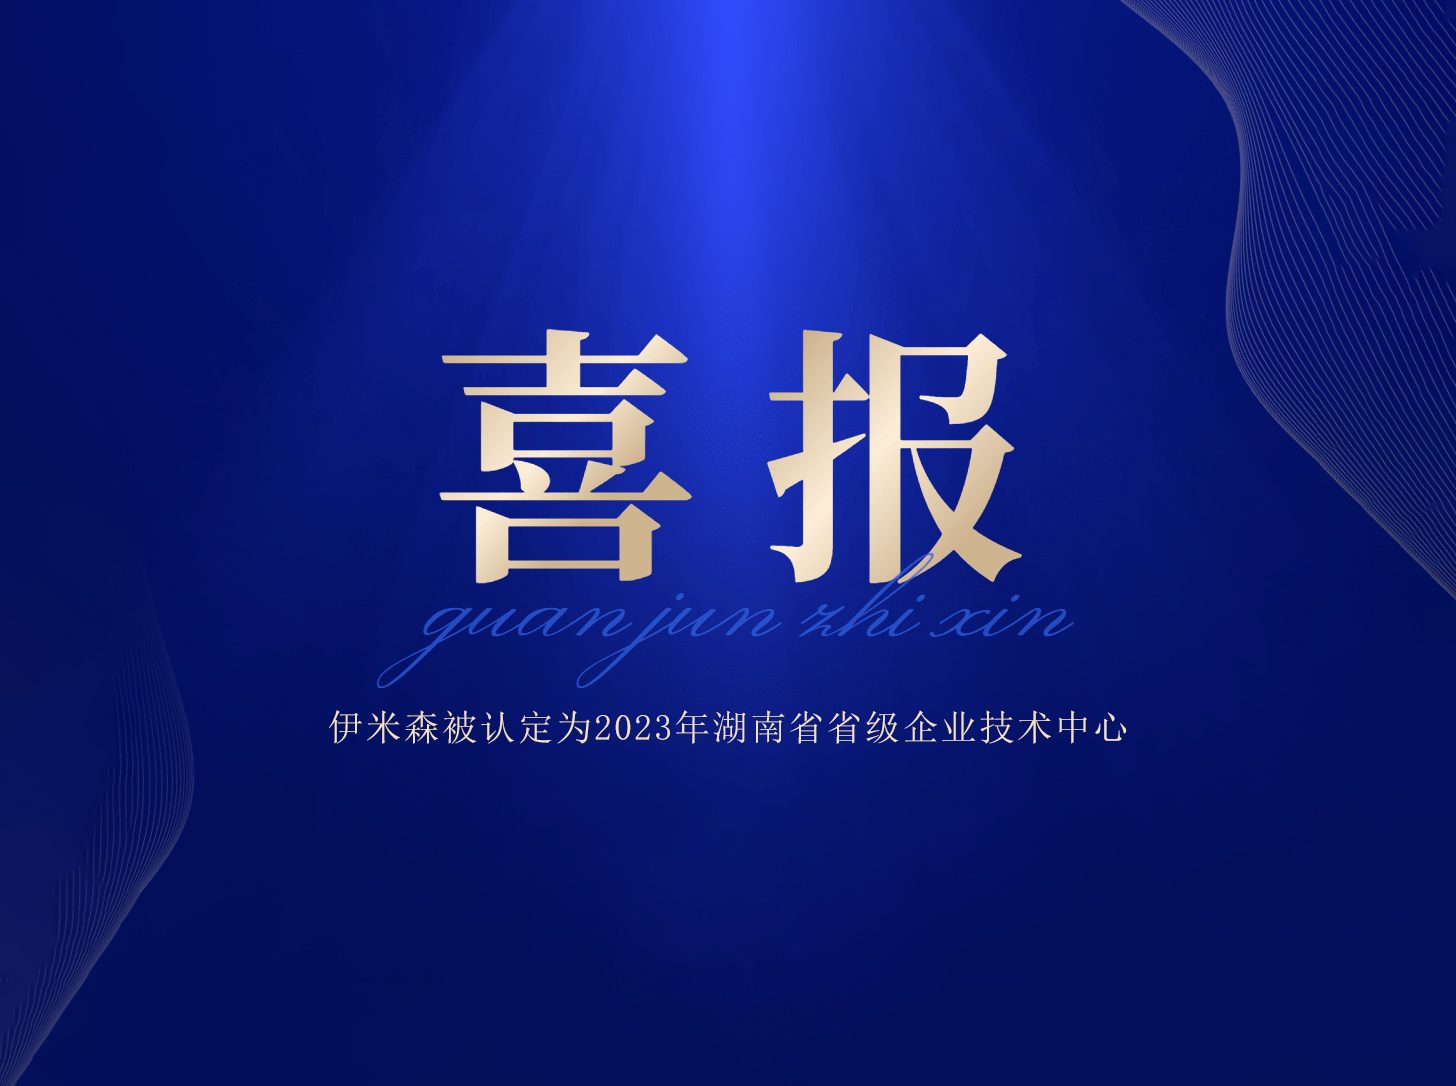 【企业喜报】 伊米森被认定为2023年湖南省省级企业技术中心